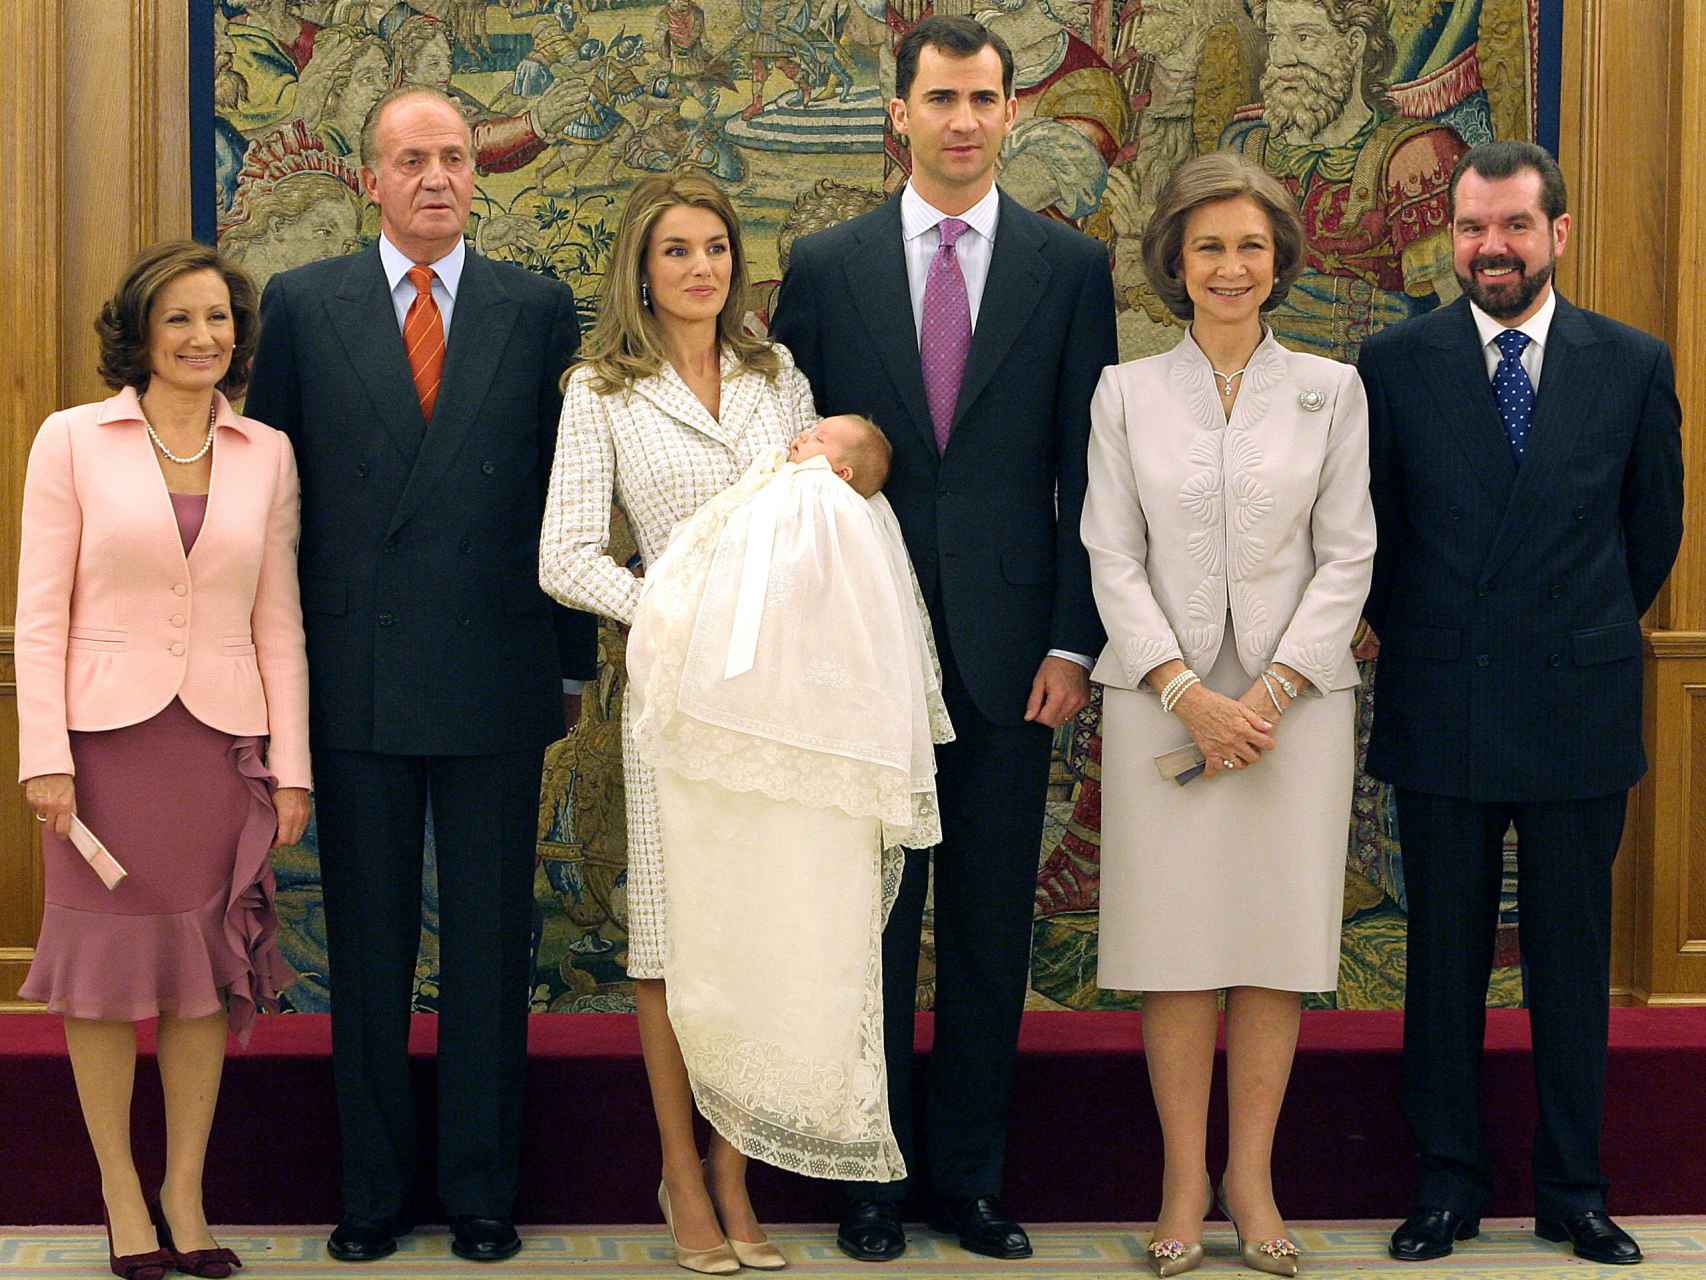 De izquierda a derecha: Paloma Rocasolano, el rey Juan Carlos, la reina Letizia con su hija Leonor en brazos, el rey Felipe, la reina Sofía y Jesús Ortiz.